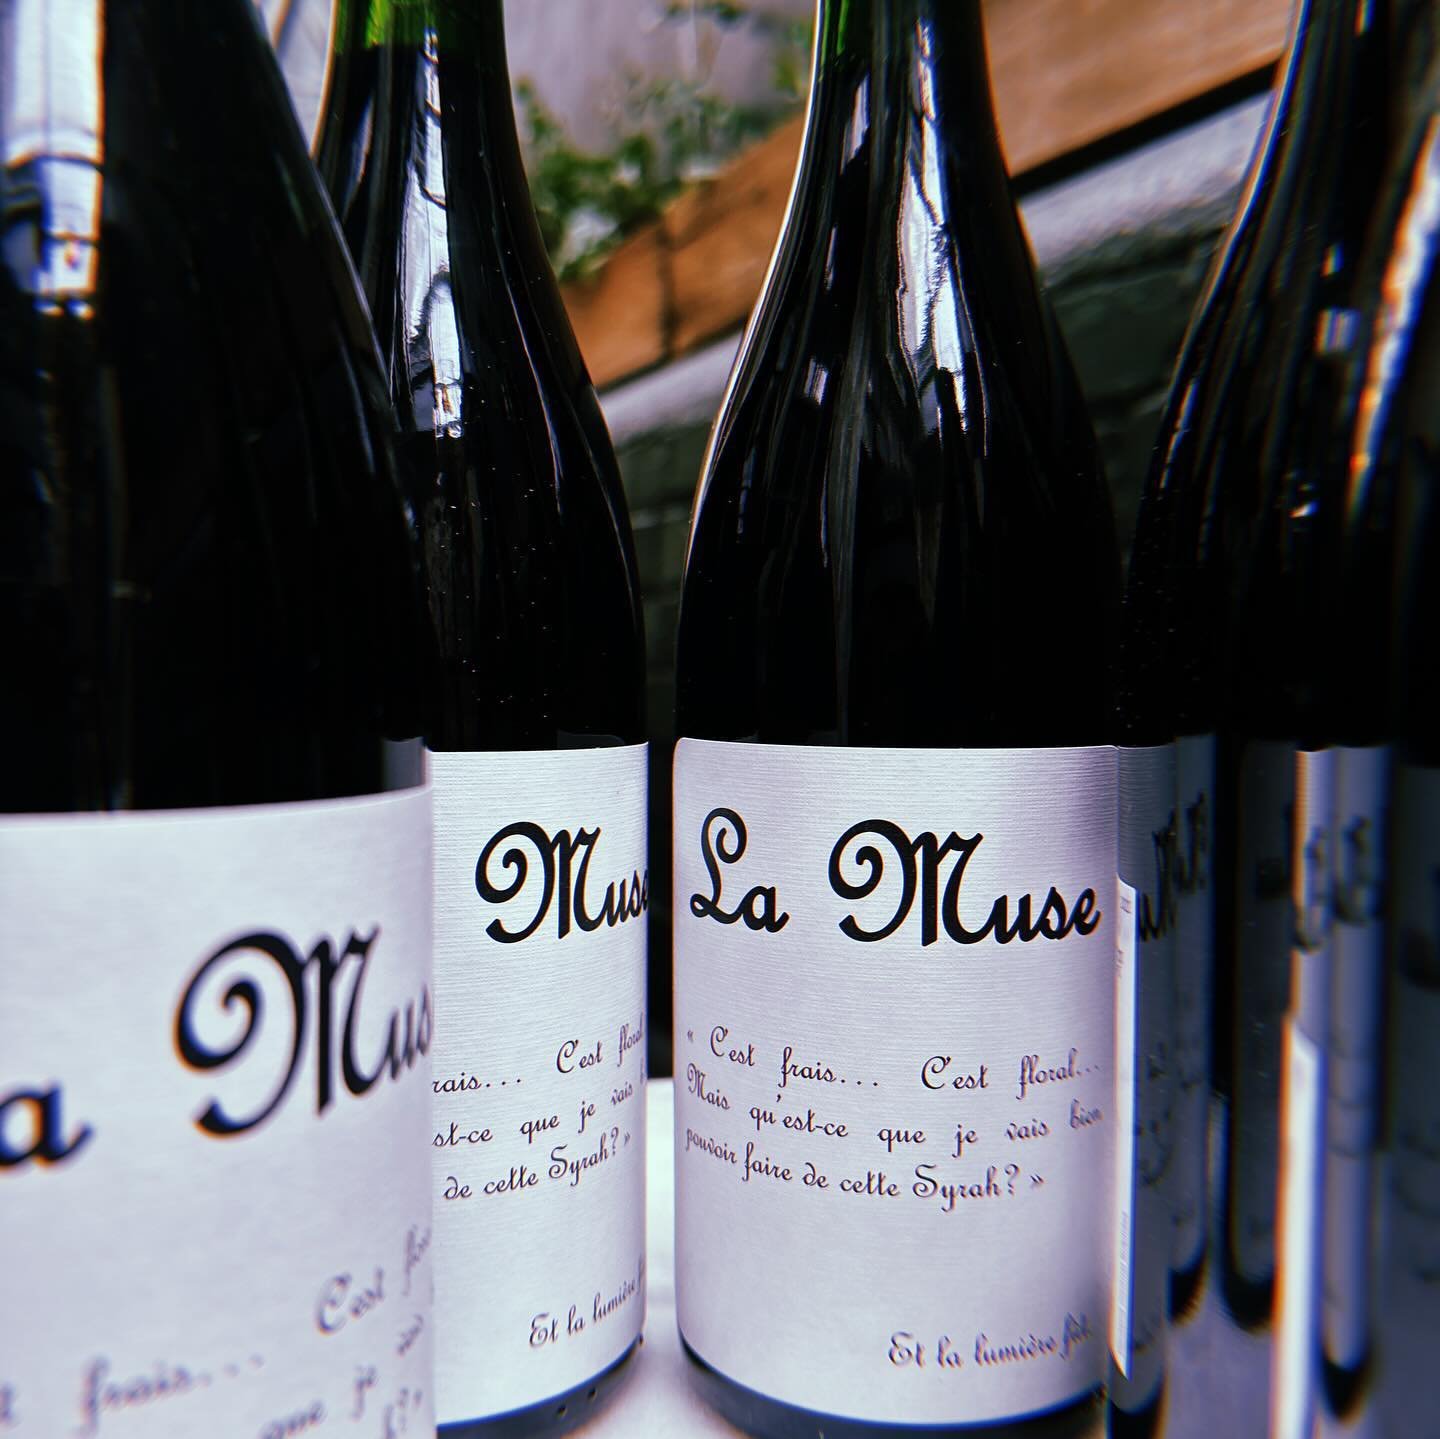 Rainy day wines to start your week 🥂

Maison Ventenac La Muse Rouge 
Castelvecchio Cabernet Franc
Goisot Bourgogne Aligot&eacute;
Halcyon Days Vermillion